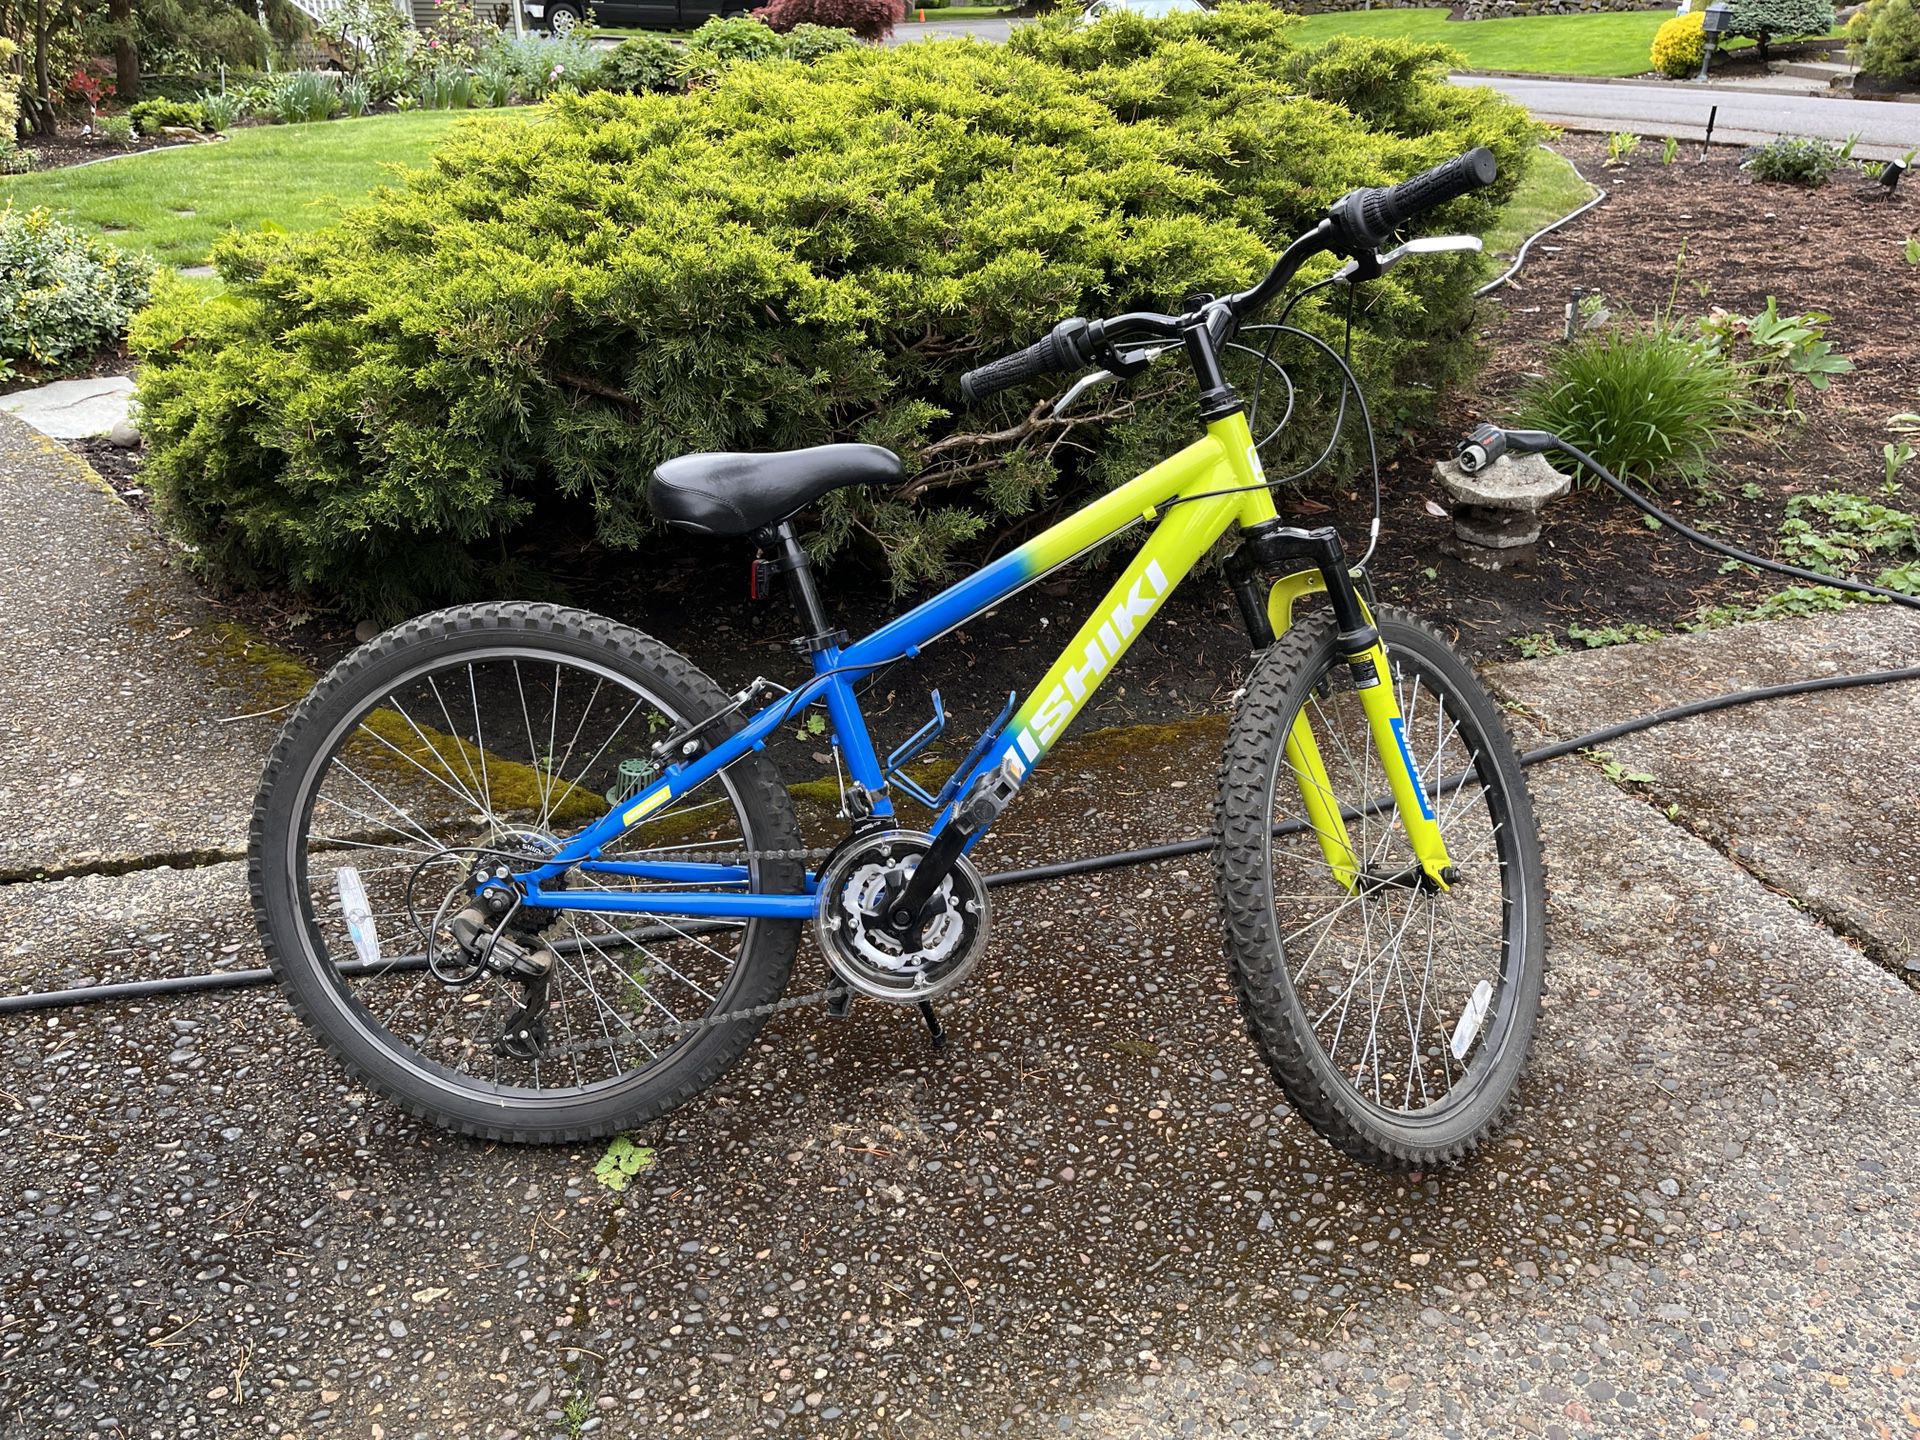 Nishiki Pueblo 24” Kids Bike